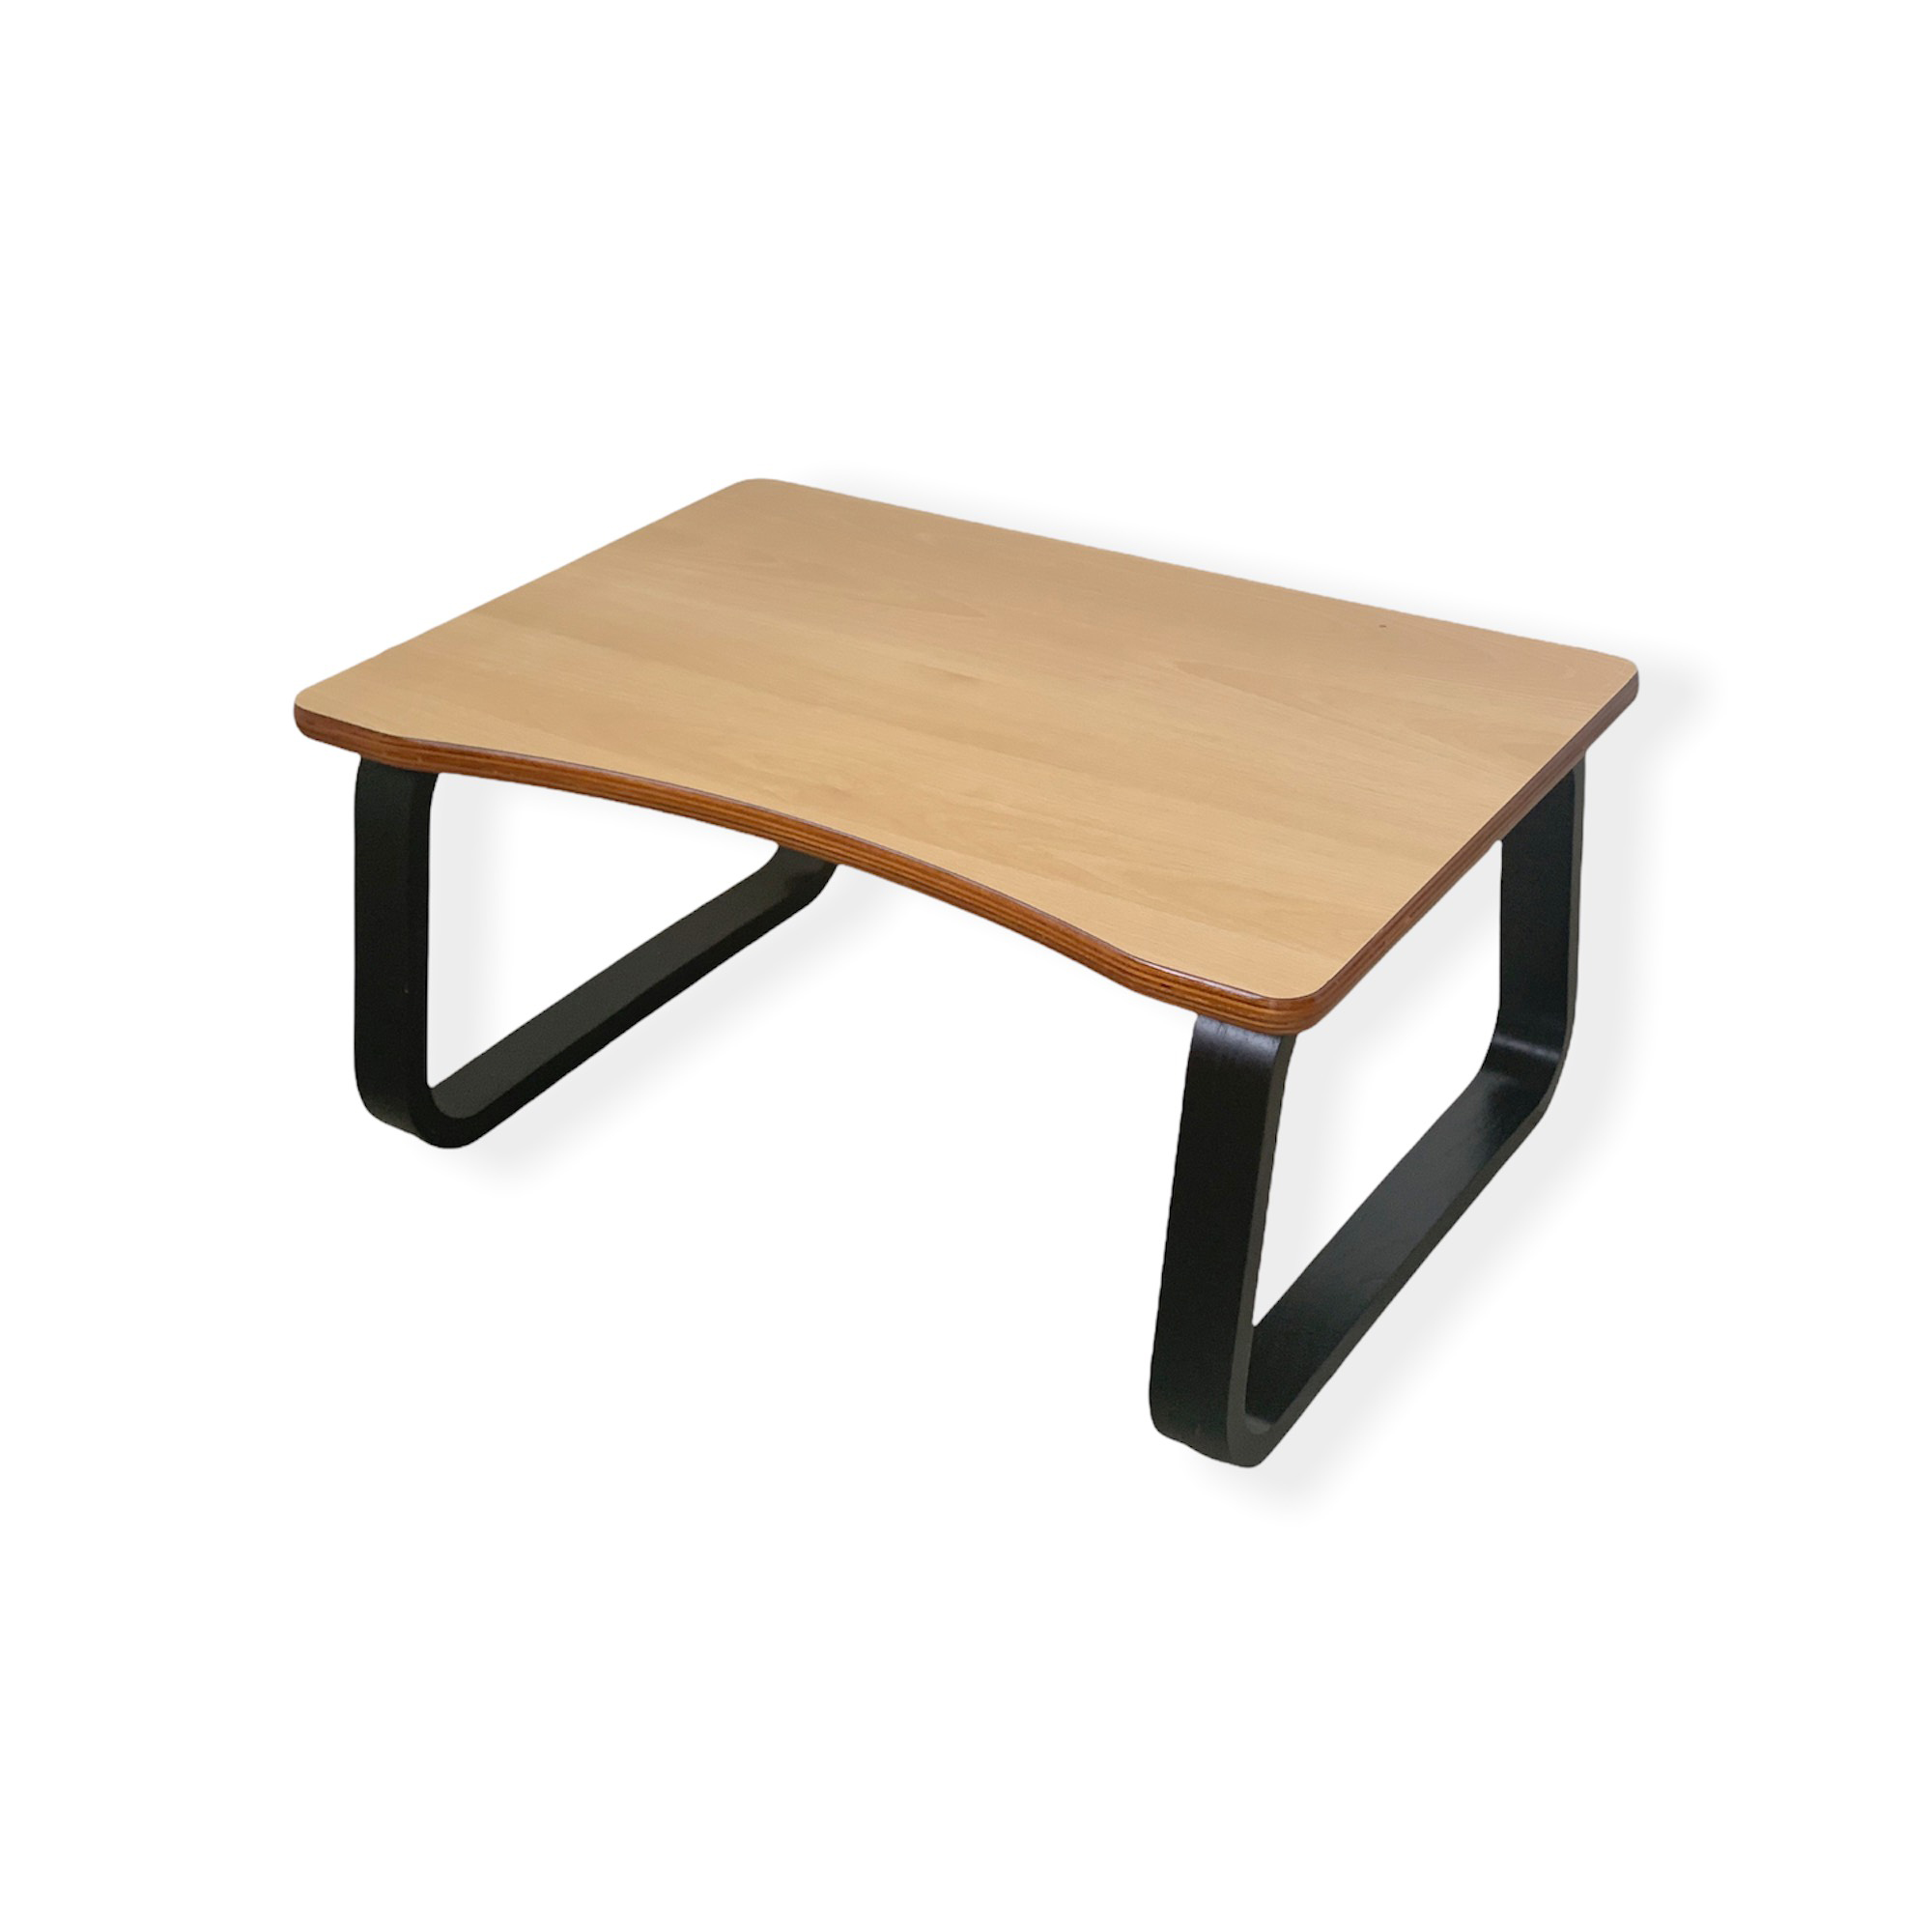 Bàn làm việc ngồi bệt, Bàn trà cafe gỗ uốn cong Plyconcept TOMA Table (65 x 45 x Cao 31 cm) - Gỗ Plywood cao cấp